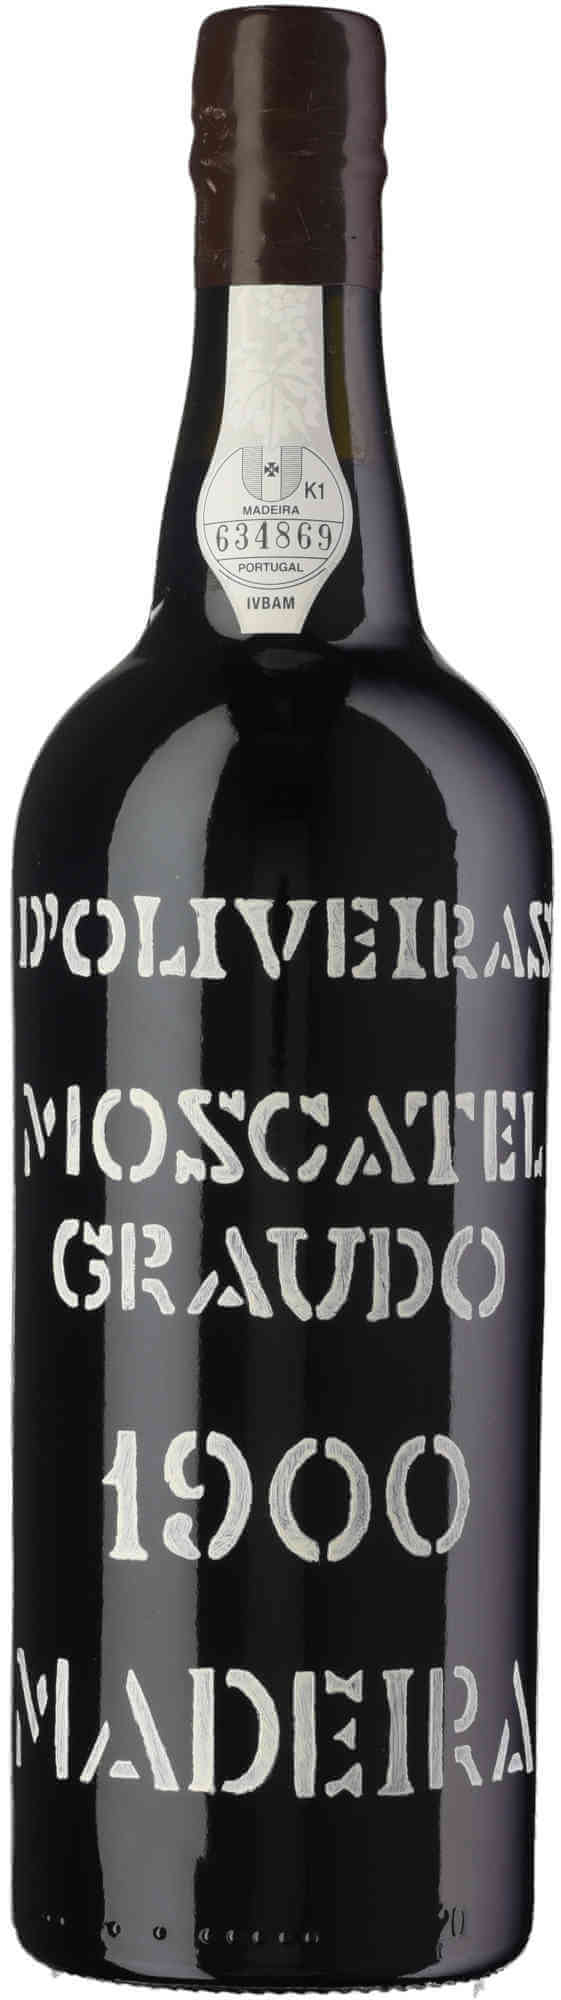 D-Oliveira-Moscatel-Graudo-Madeira-1900